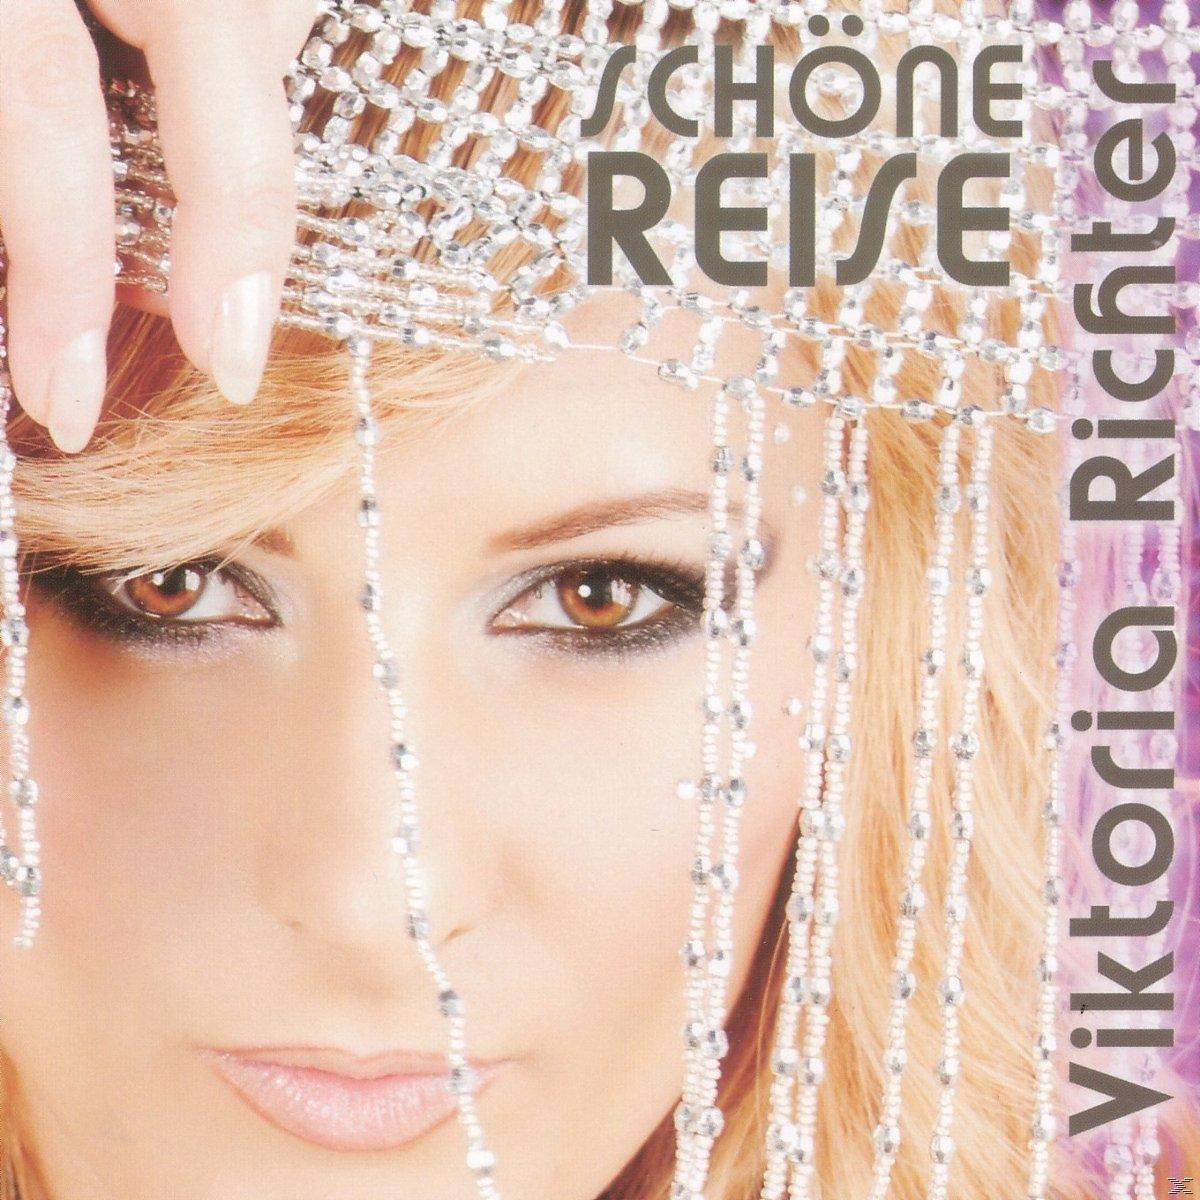 (CD) - Viktoria - Richter Schöne Reise